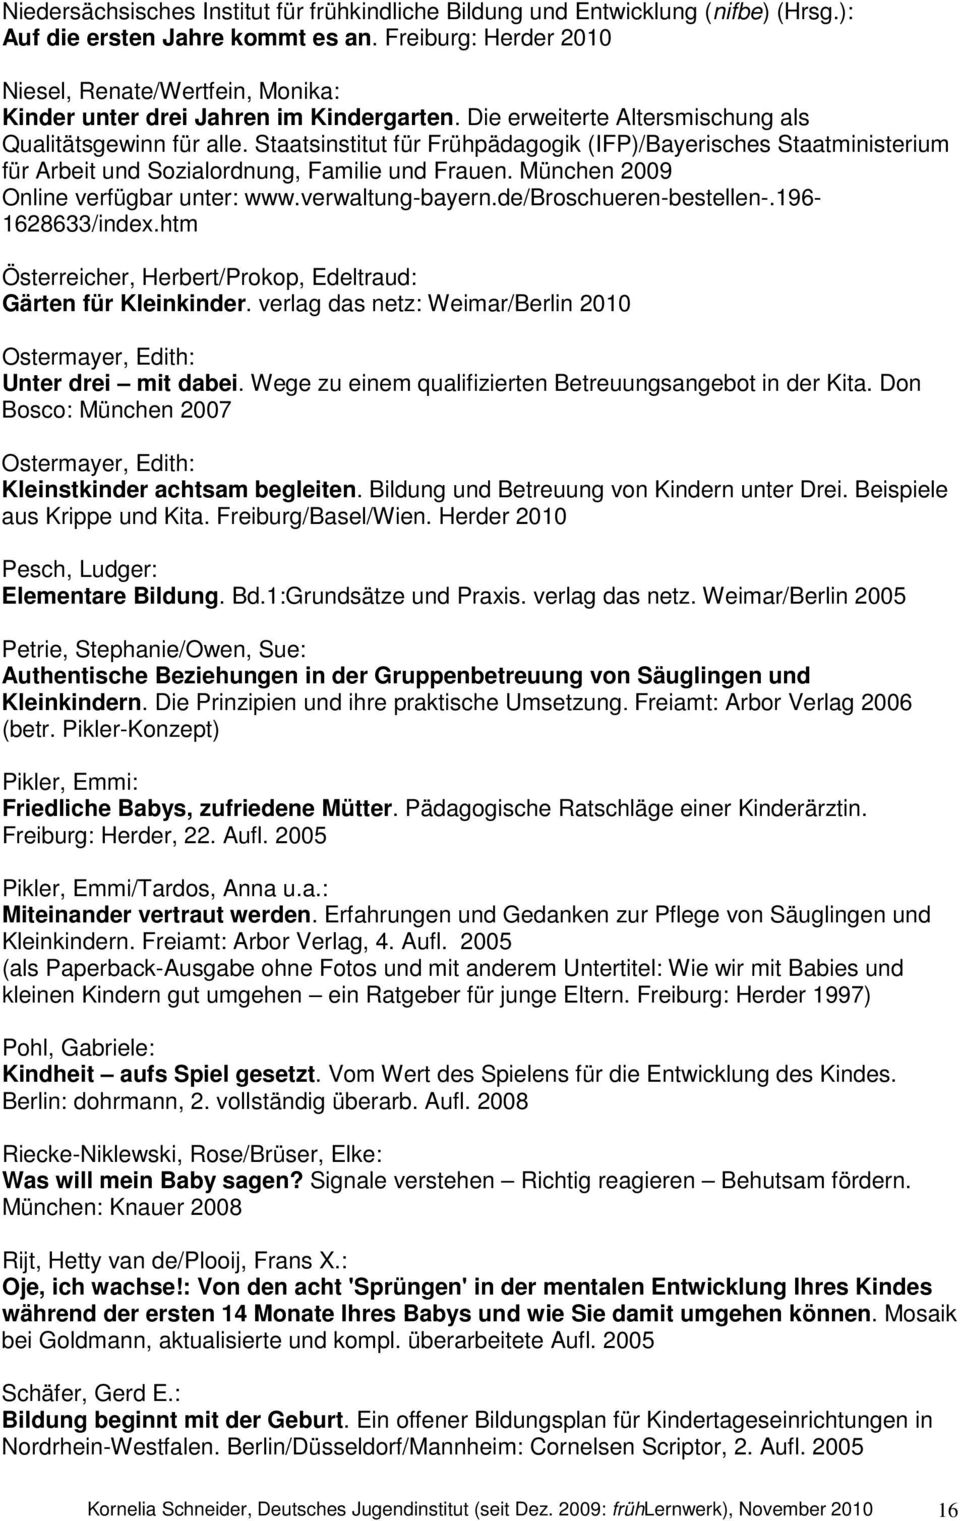 Staatsinstitut für Frühpädagogik (IFP)/Bayerisches Staatministerium für Arbeit und Sozialordnung, Familie und Frauen. München 2009 Online verfügbar unter: www.verwaltung-bayern.